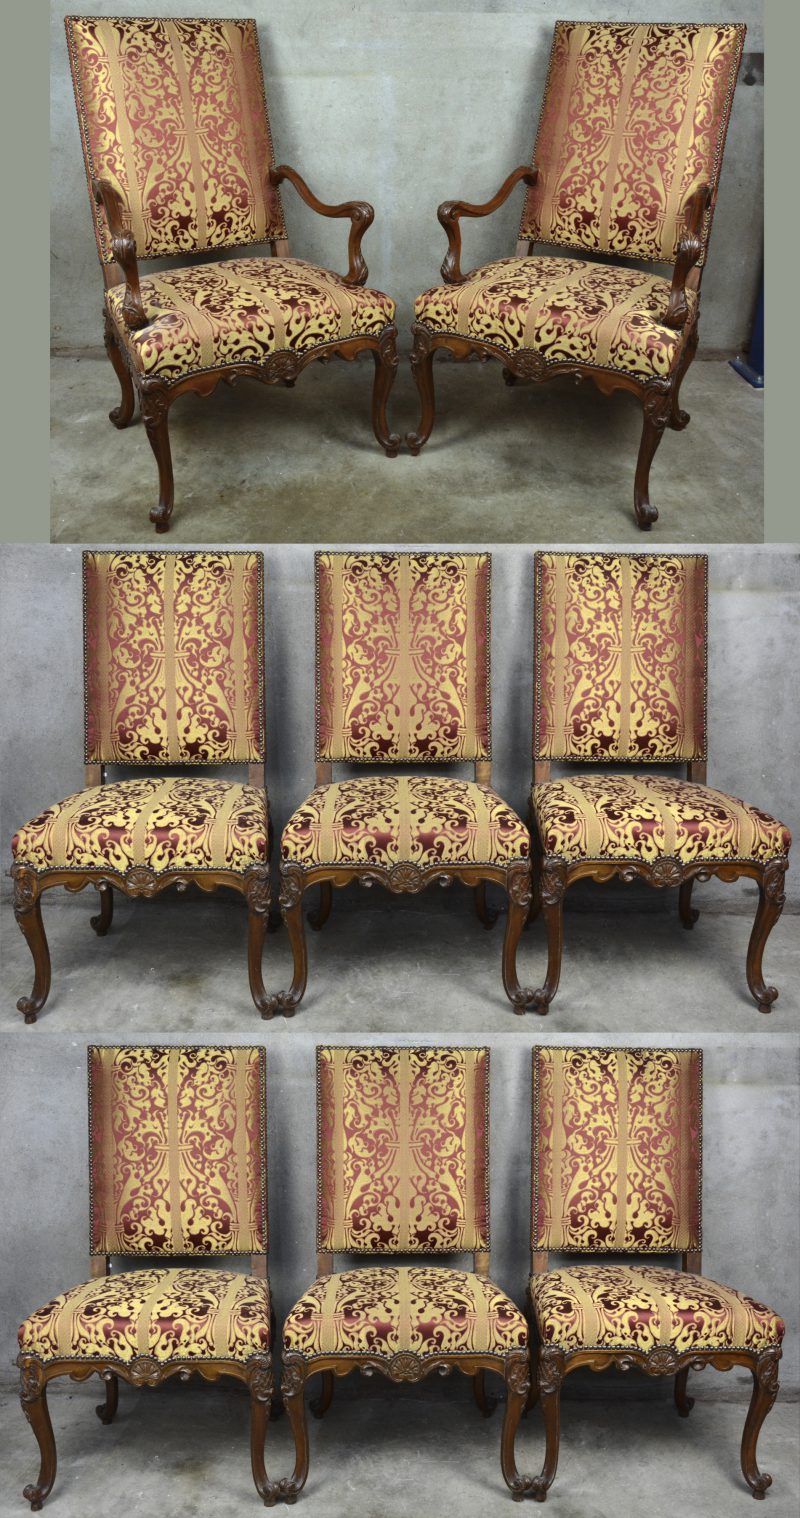 Een reeks van acht gesculpteerde stoelen en twee armstoelen in barokke stijl met gouden en bordeauxrode bekleding.